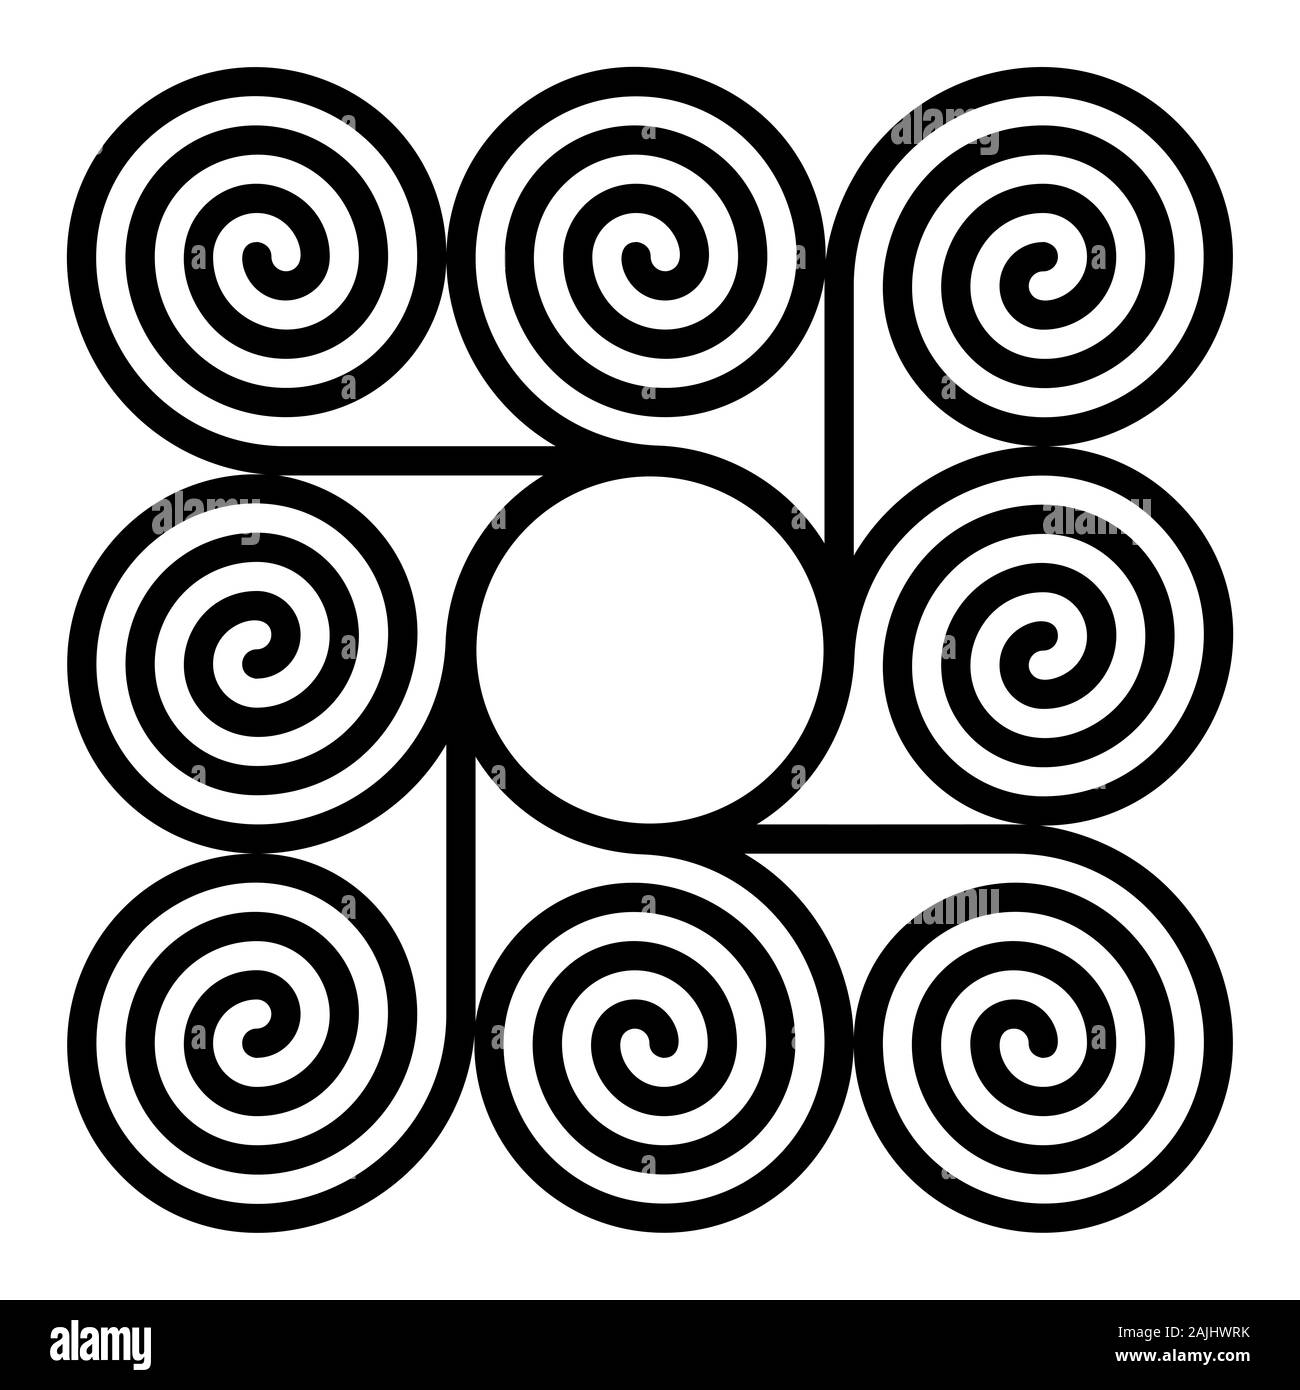 8 spirali di aritmetica intorno a un cerchio che formano un quadrato modello sagomato. Spirali di Archimede degli stessi intervalli collegato con un cerchio nel centro. Foto Stock